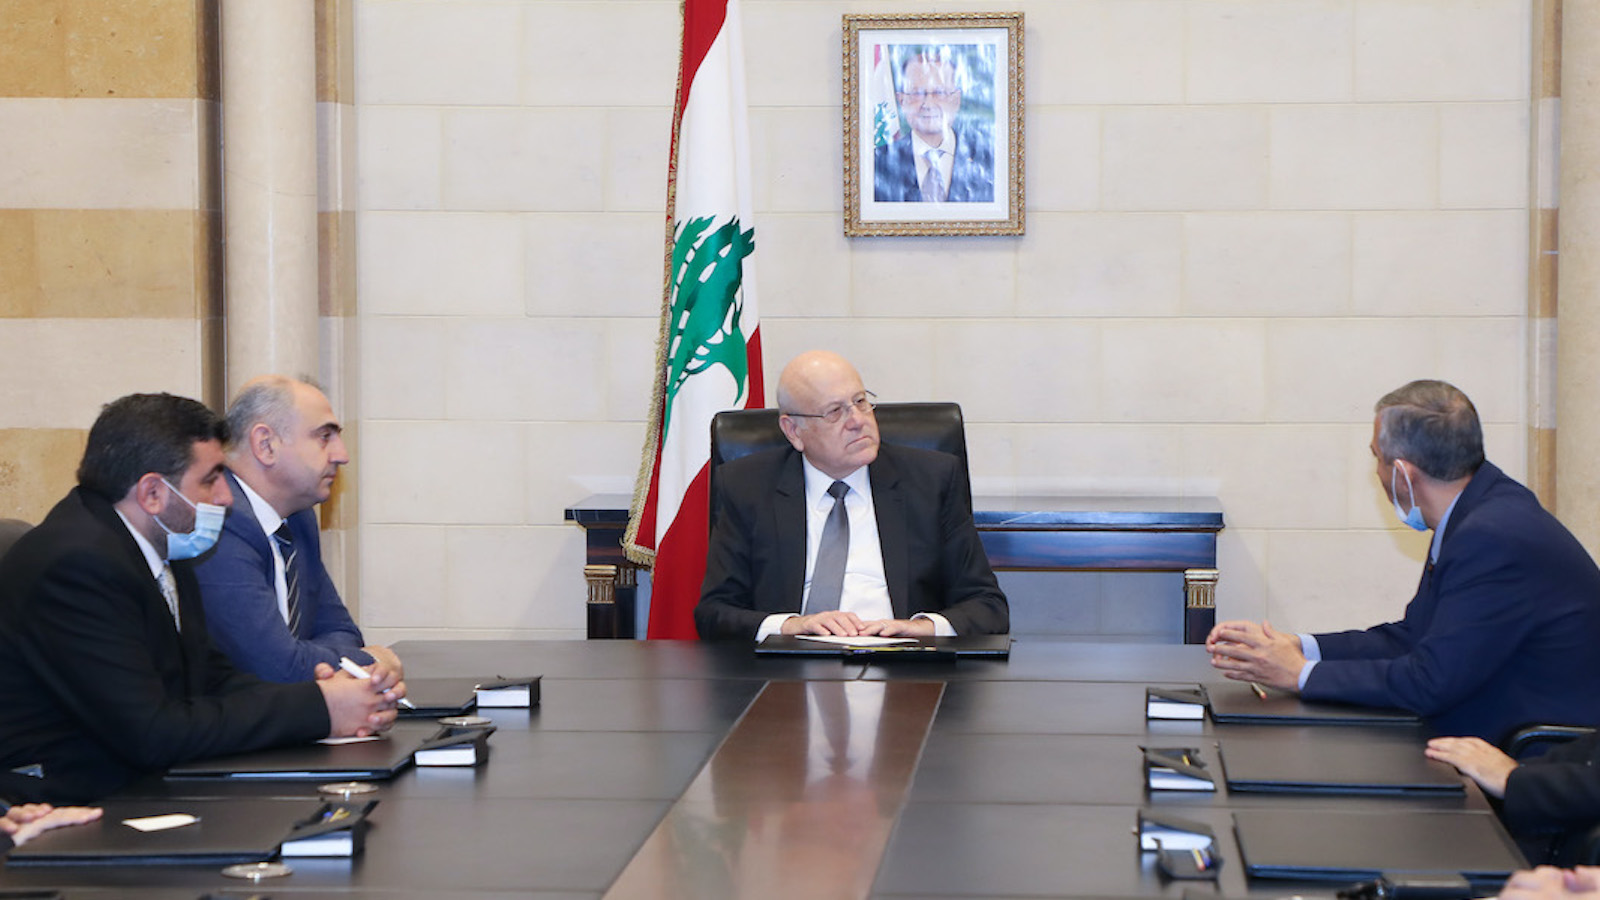 لجنة متقاعدين تتحكم بـ"اللبنانية": بدران يقصي إدارة الجامعة وأهلها